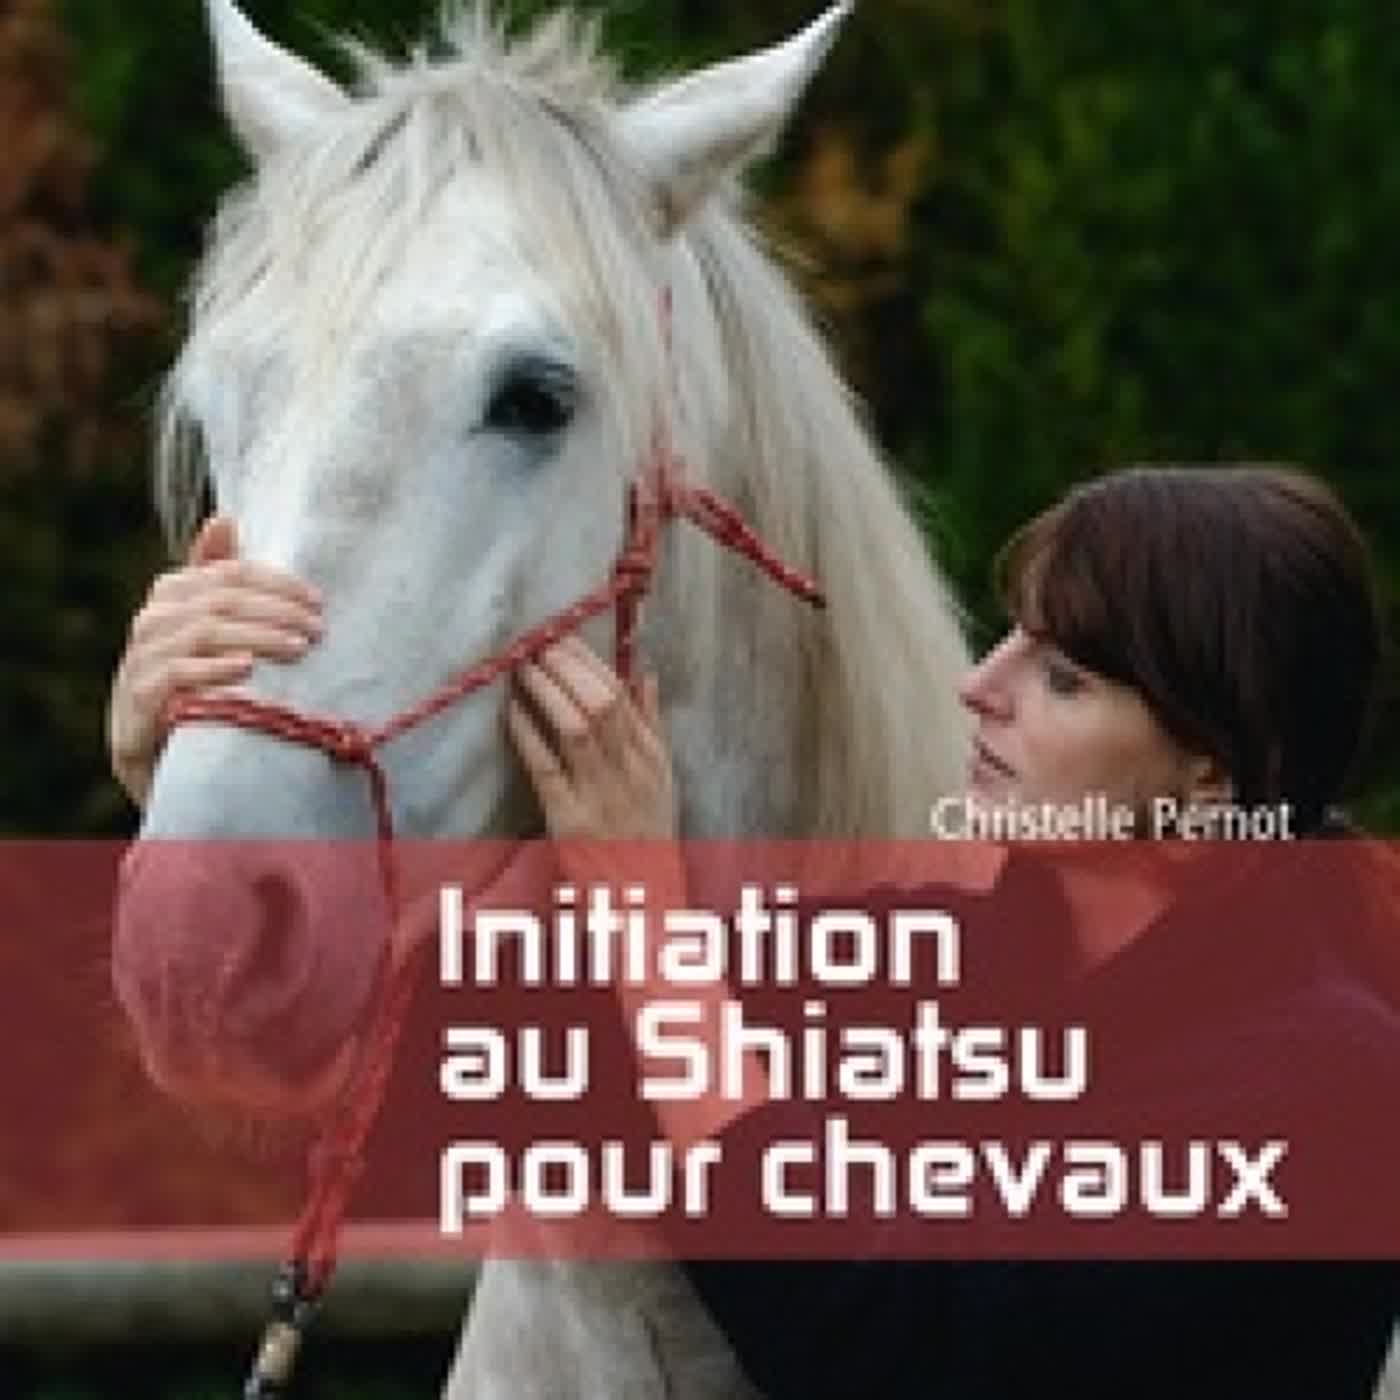 {pdf download} Initiation au shiatsu pour chevaux  - Le pouvoir de toucher